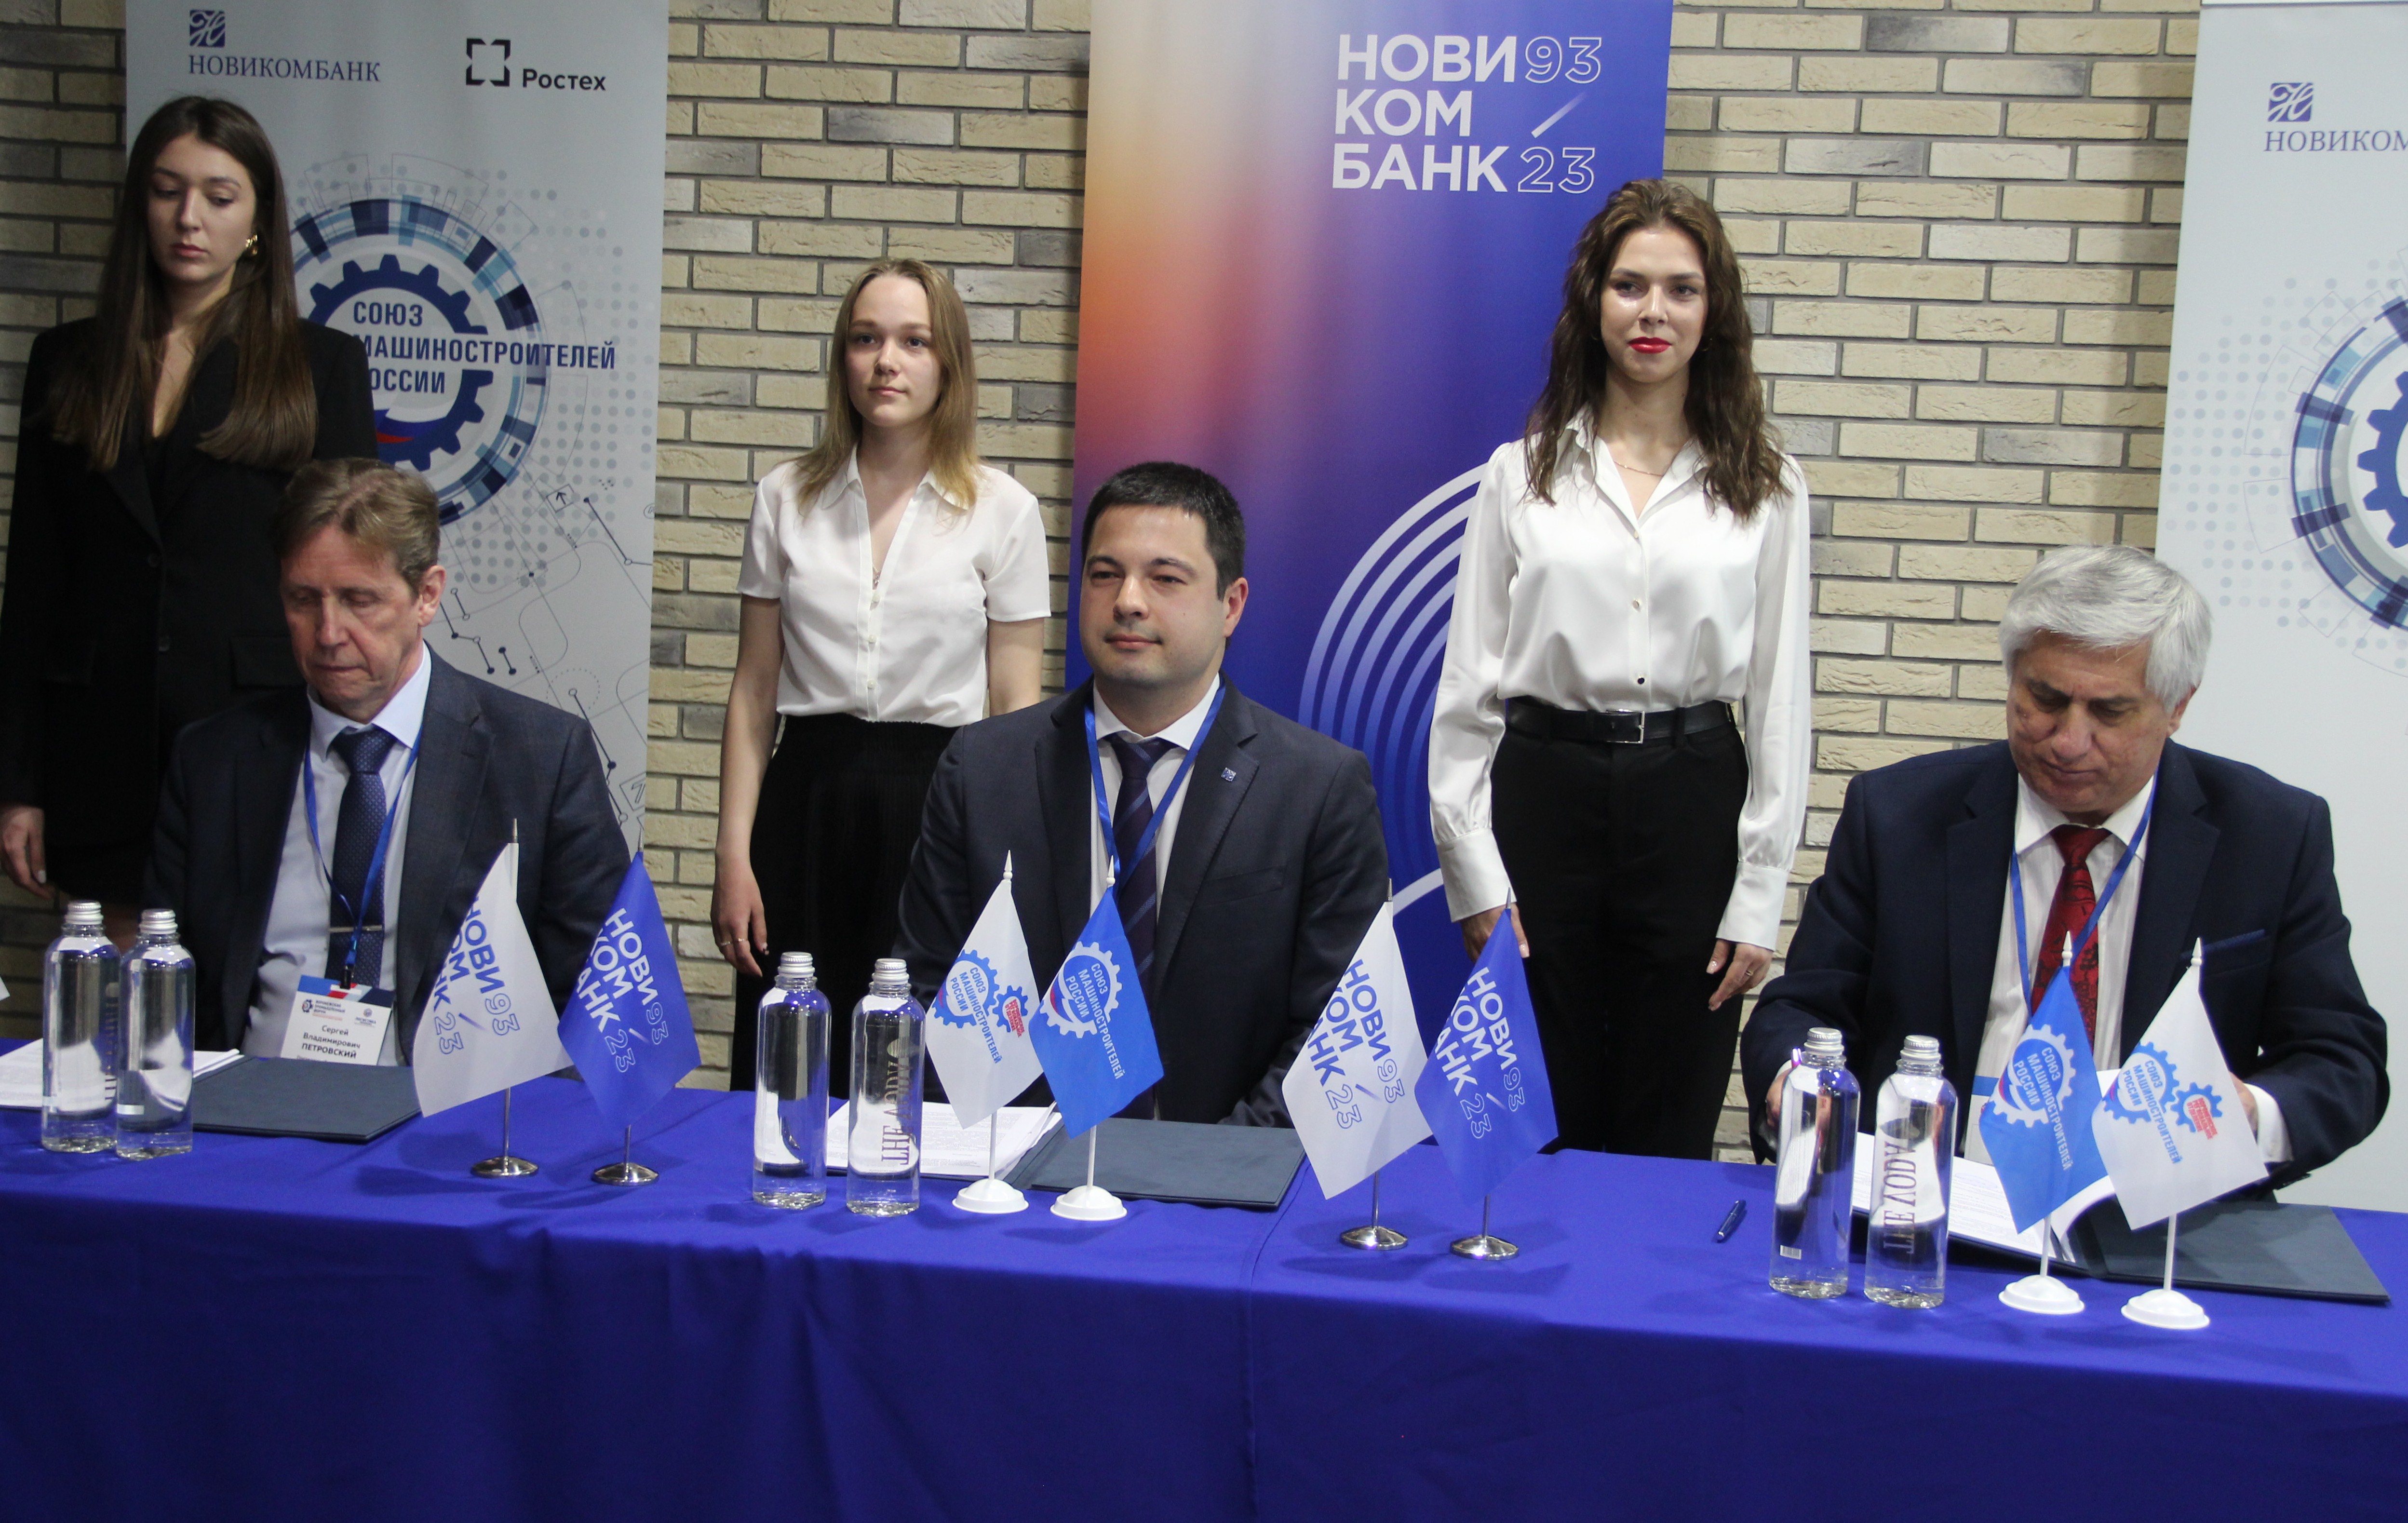 Новикомбанк и Торгово-промышленная палата  Воронежской области подписали соглашение о  партнерстве